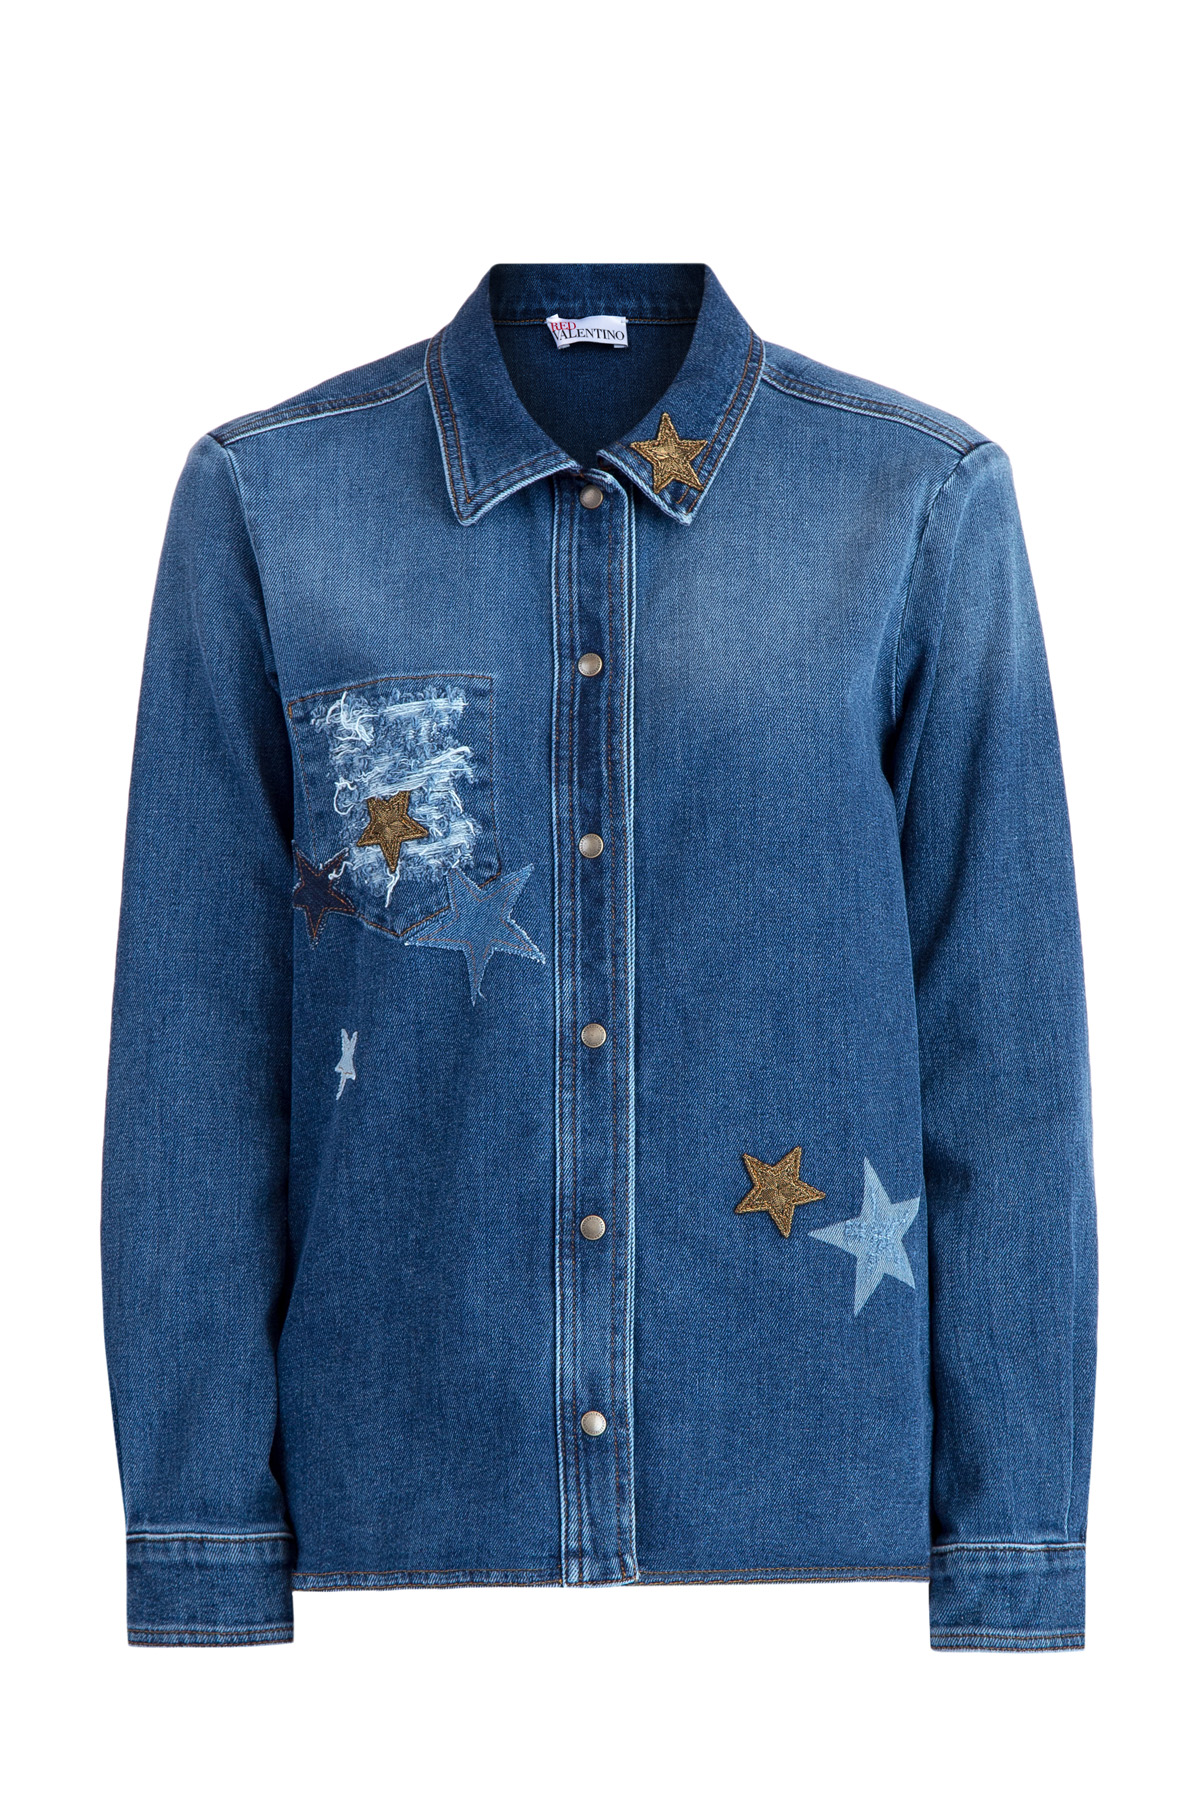 Джинсовая рубашка с аппликациями и вышивкой бисером в виде звезд